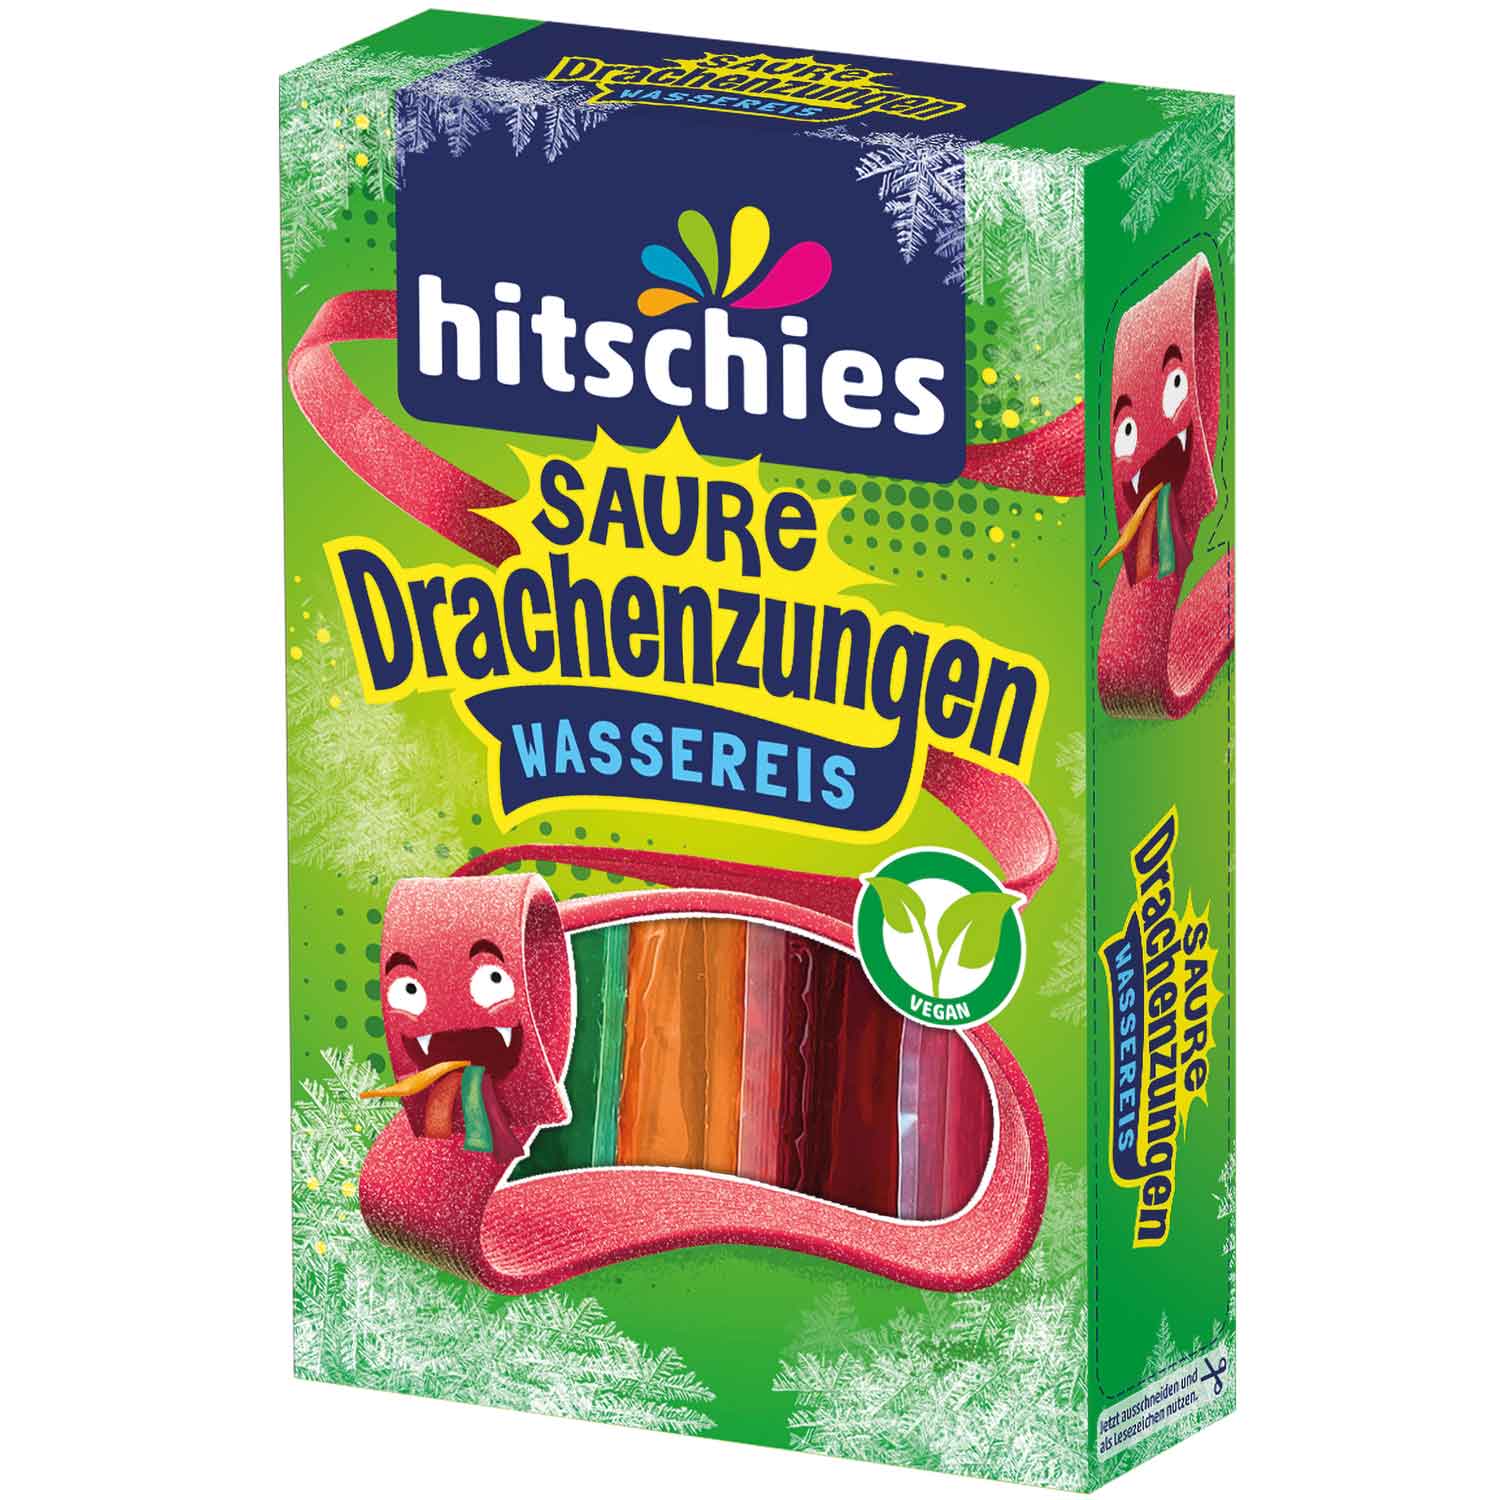 hitschies Saure Drachenzungen Wassereis 10x40ml - Candyshop.ch